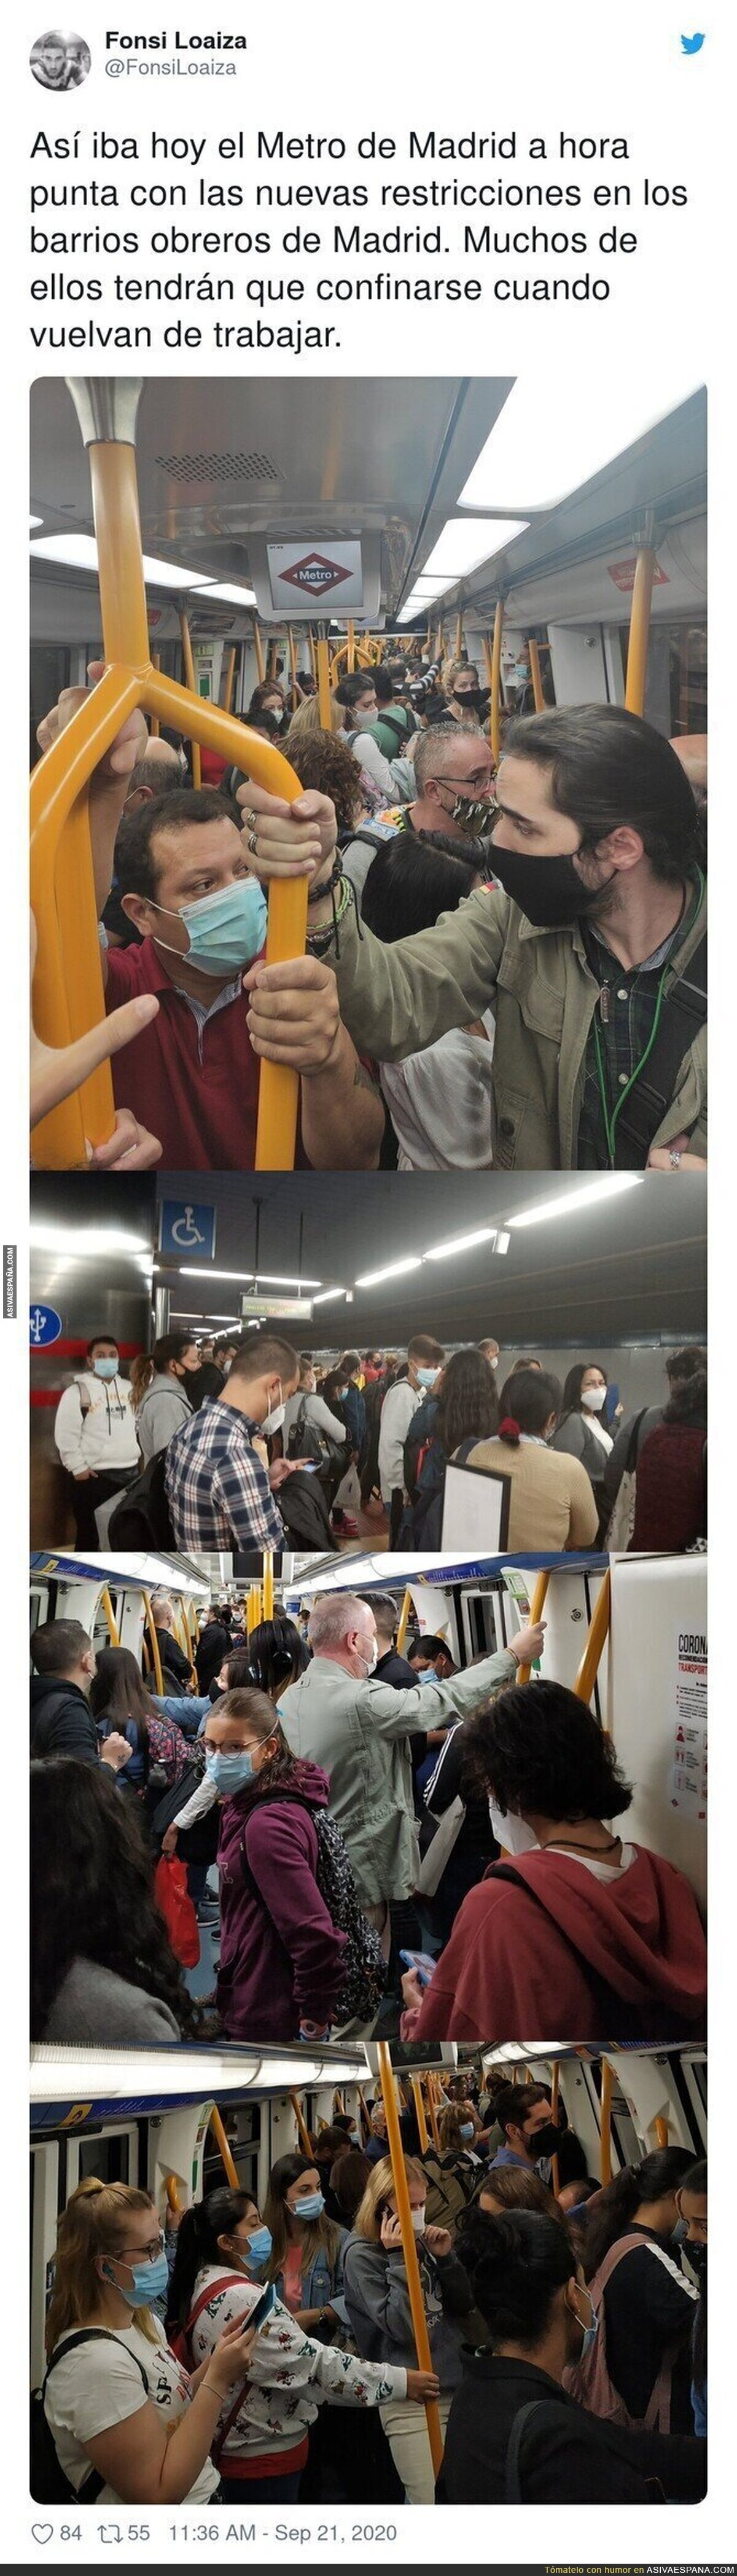 Así iba el Metro tras las medidas de confinamiento a los barrios pobres de Madrid